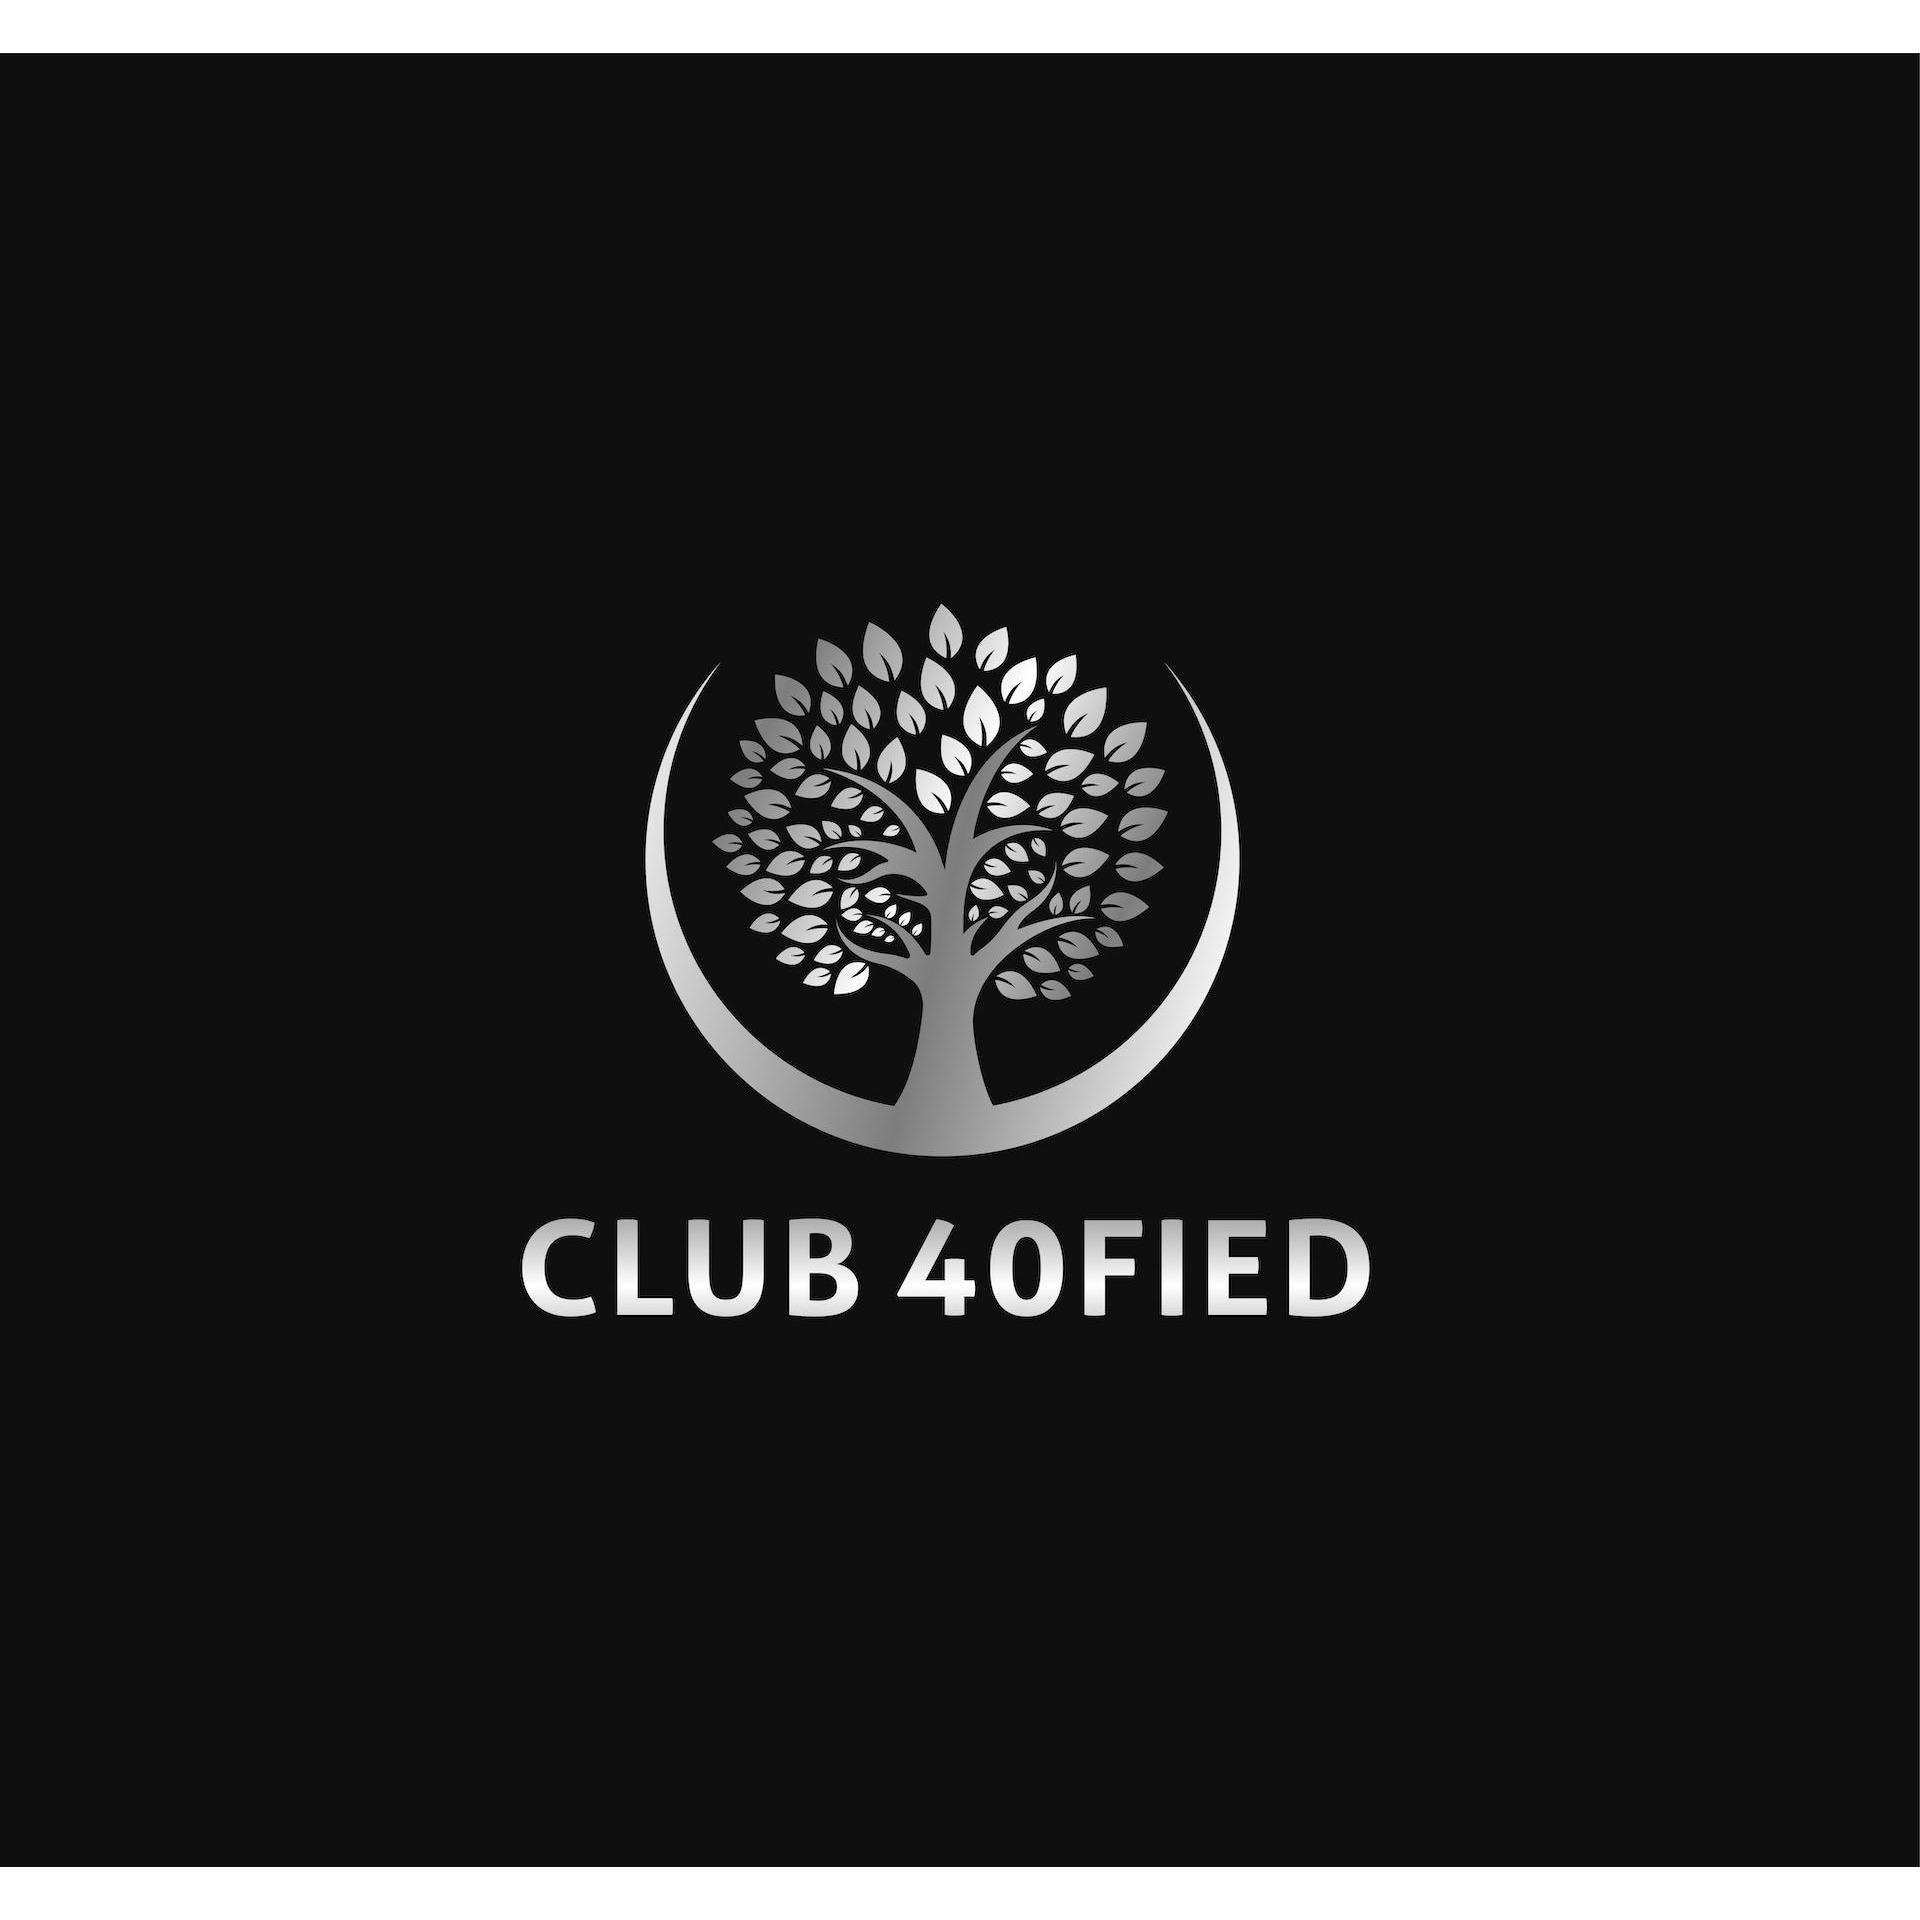 Club 40fied - Arundel, QLD 4214 - (07) 4803 8094 | ShowMeLocal.com